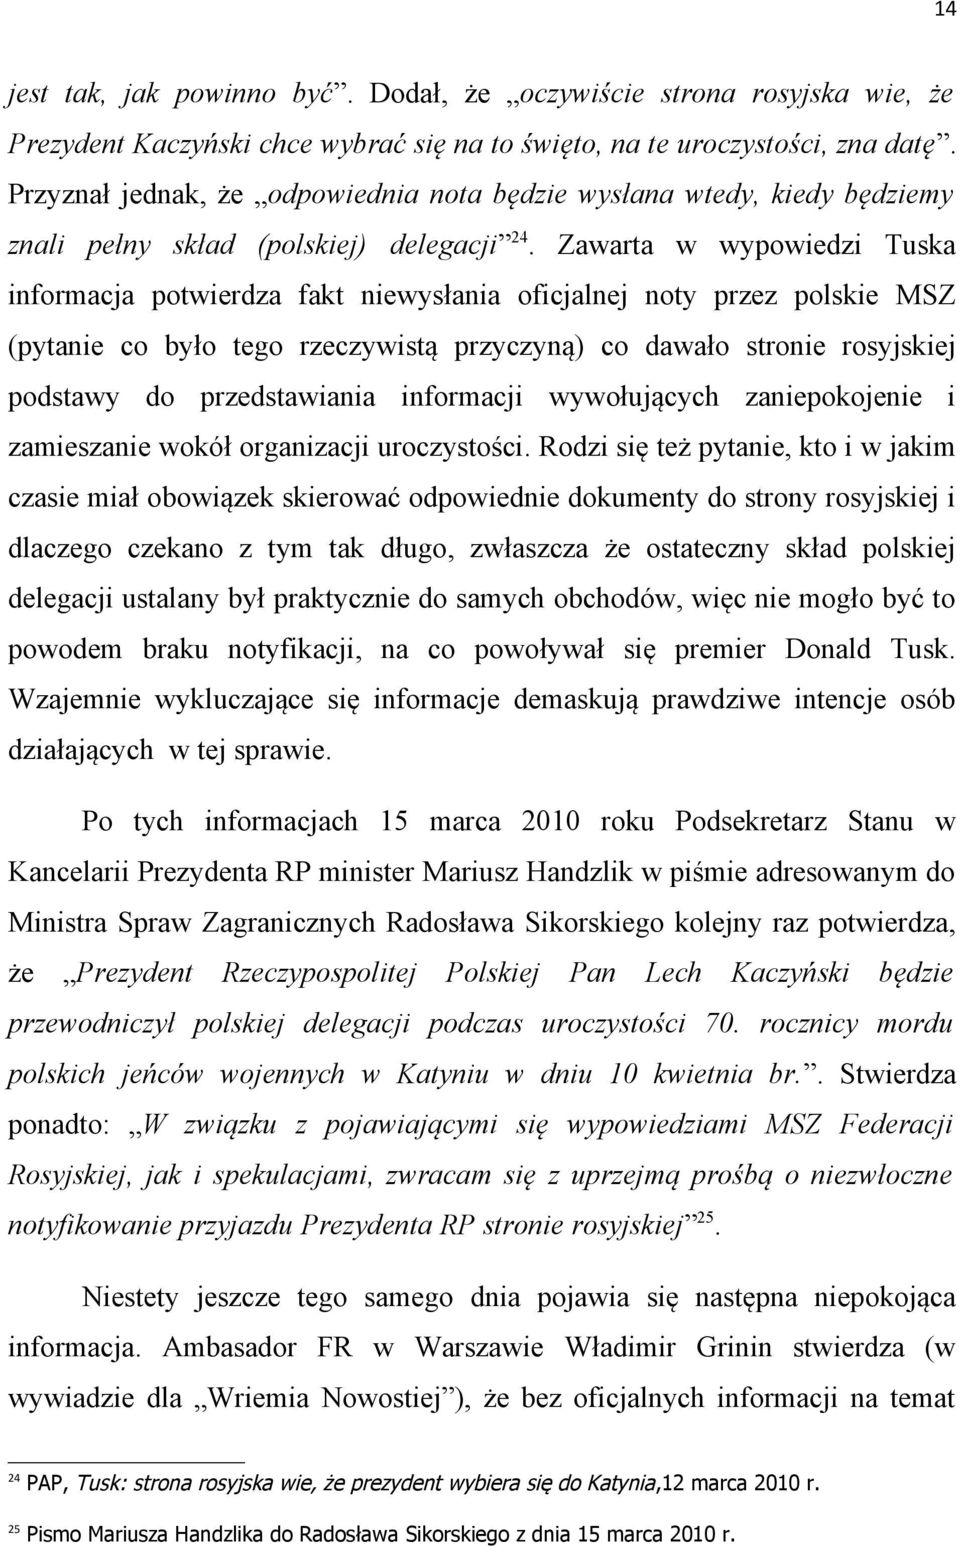 Zawarta w wypowiedzi Tuska informacja potwierdza fakt niewysłania oficjalnej noty przez polskie MSZ (pytanie co było tego rzeczywistą przyczyną) co dawało stronie rosyjskiej podstawy do